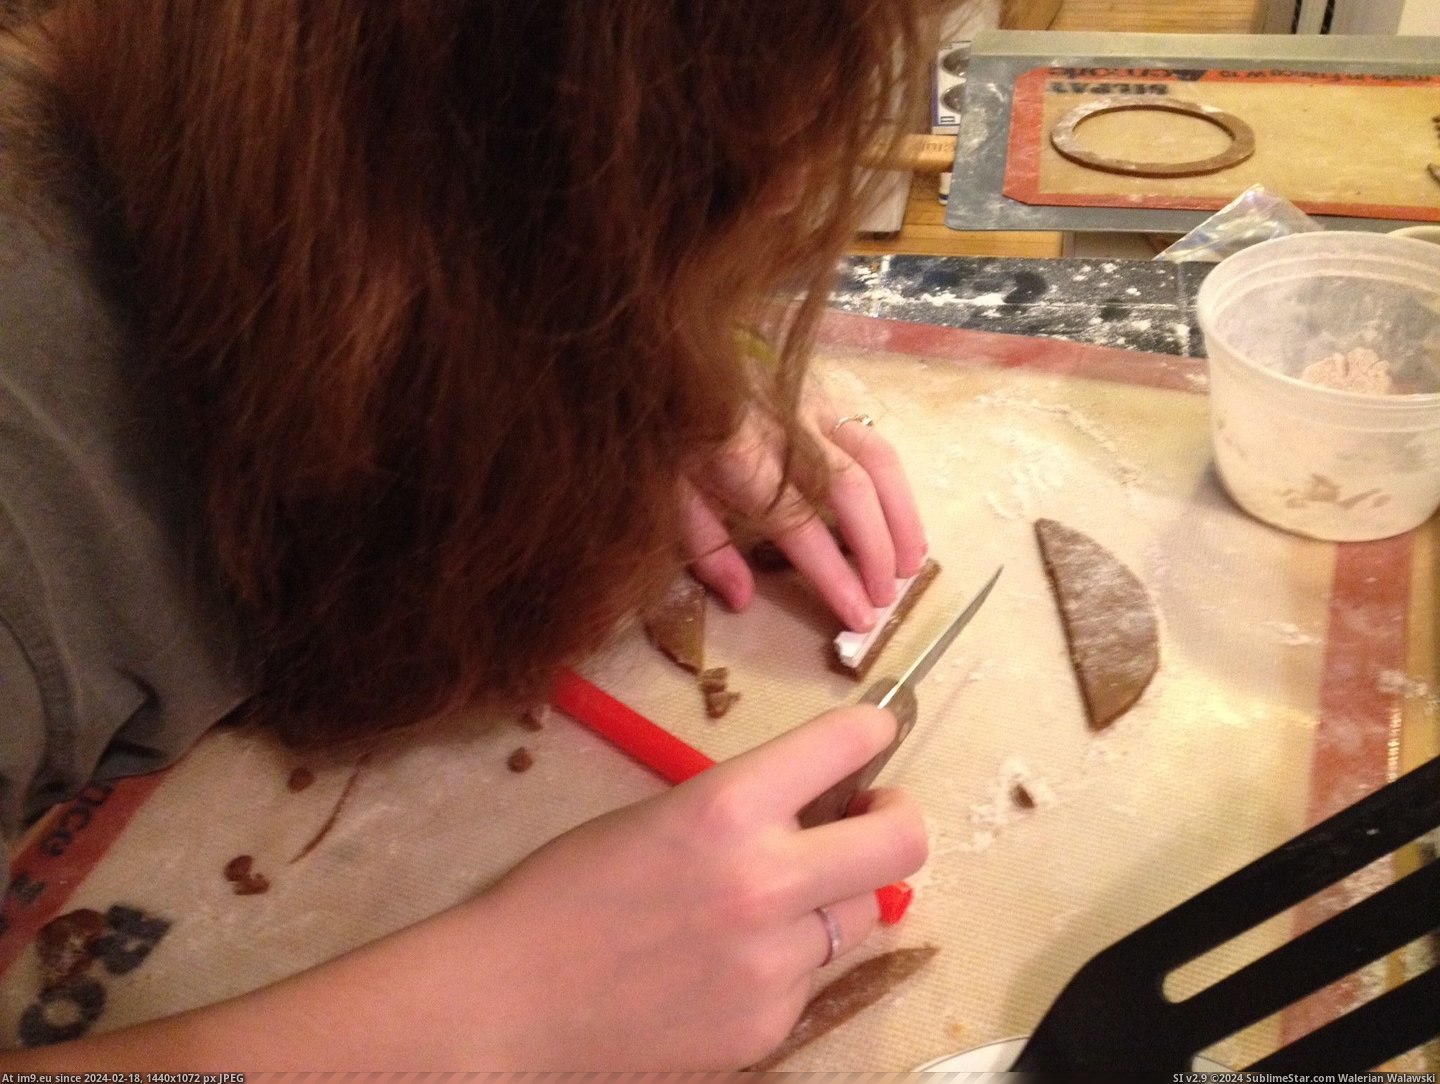 #Daughter #Tower #Pisa #Gingerbread #Leaning [Pics] My Daughter and I Made a Gingerbread Leaning Tower of Pisa 5 Pic. (Image of album My r/PICS favs))